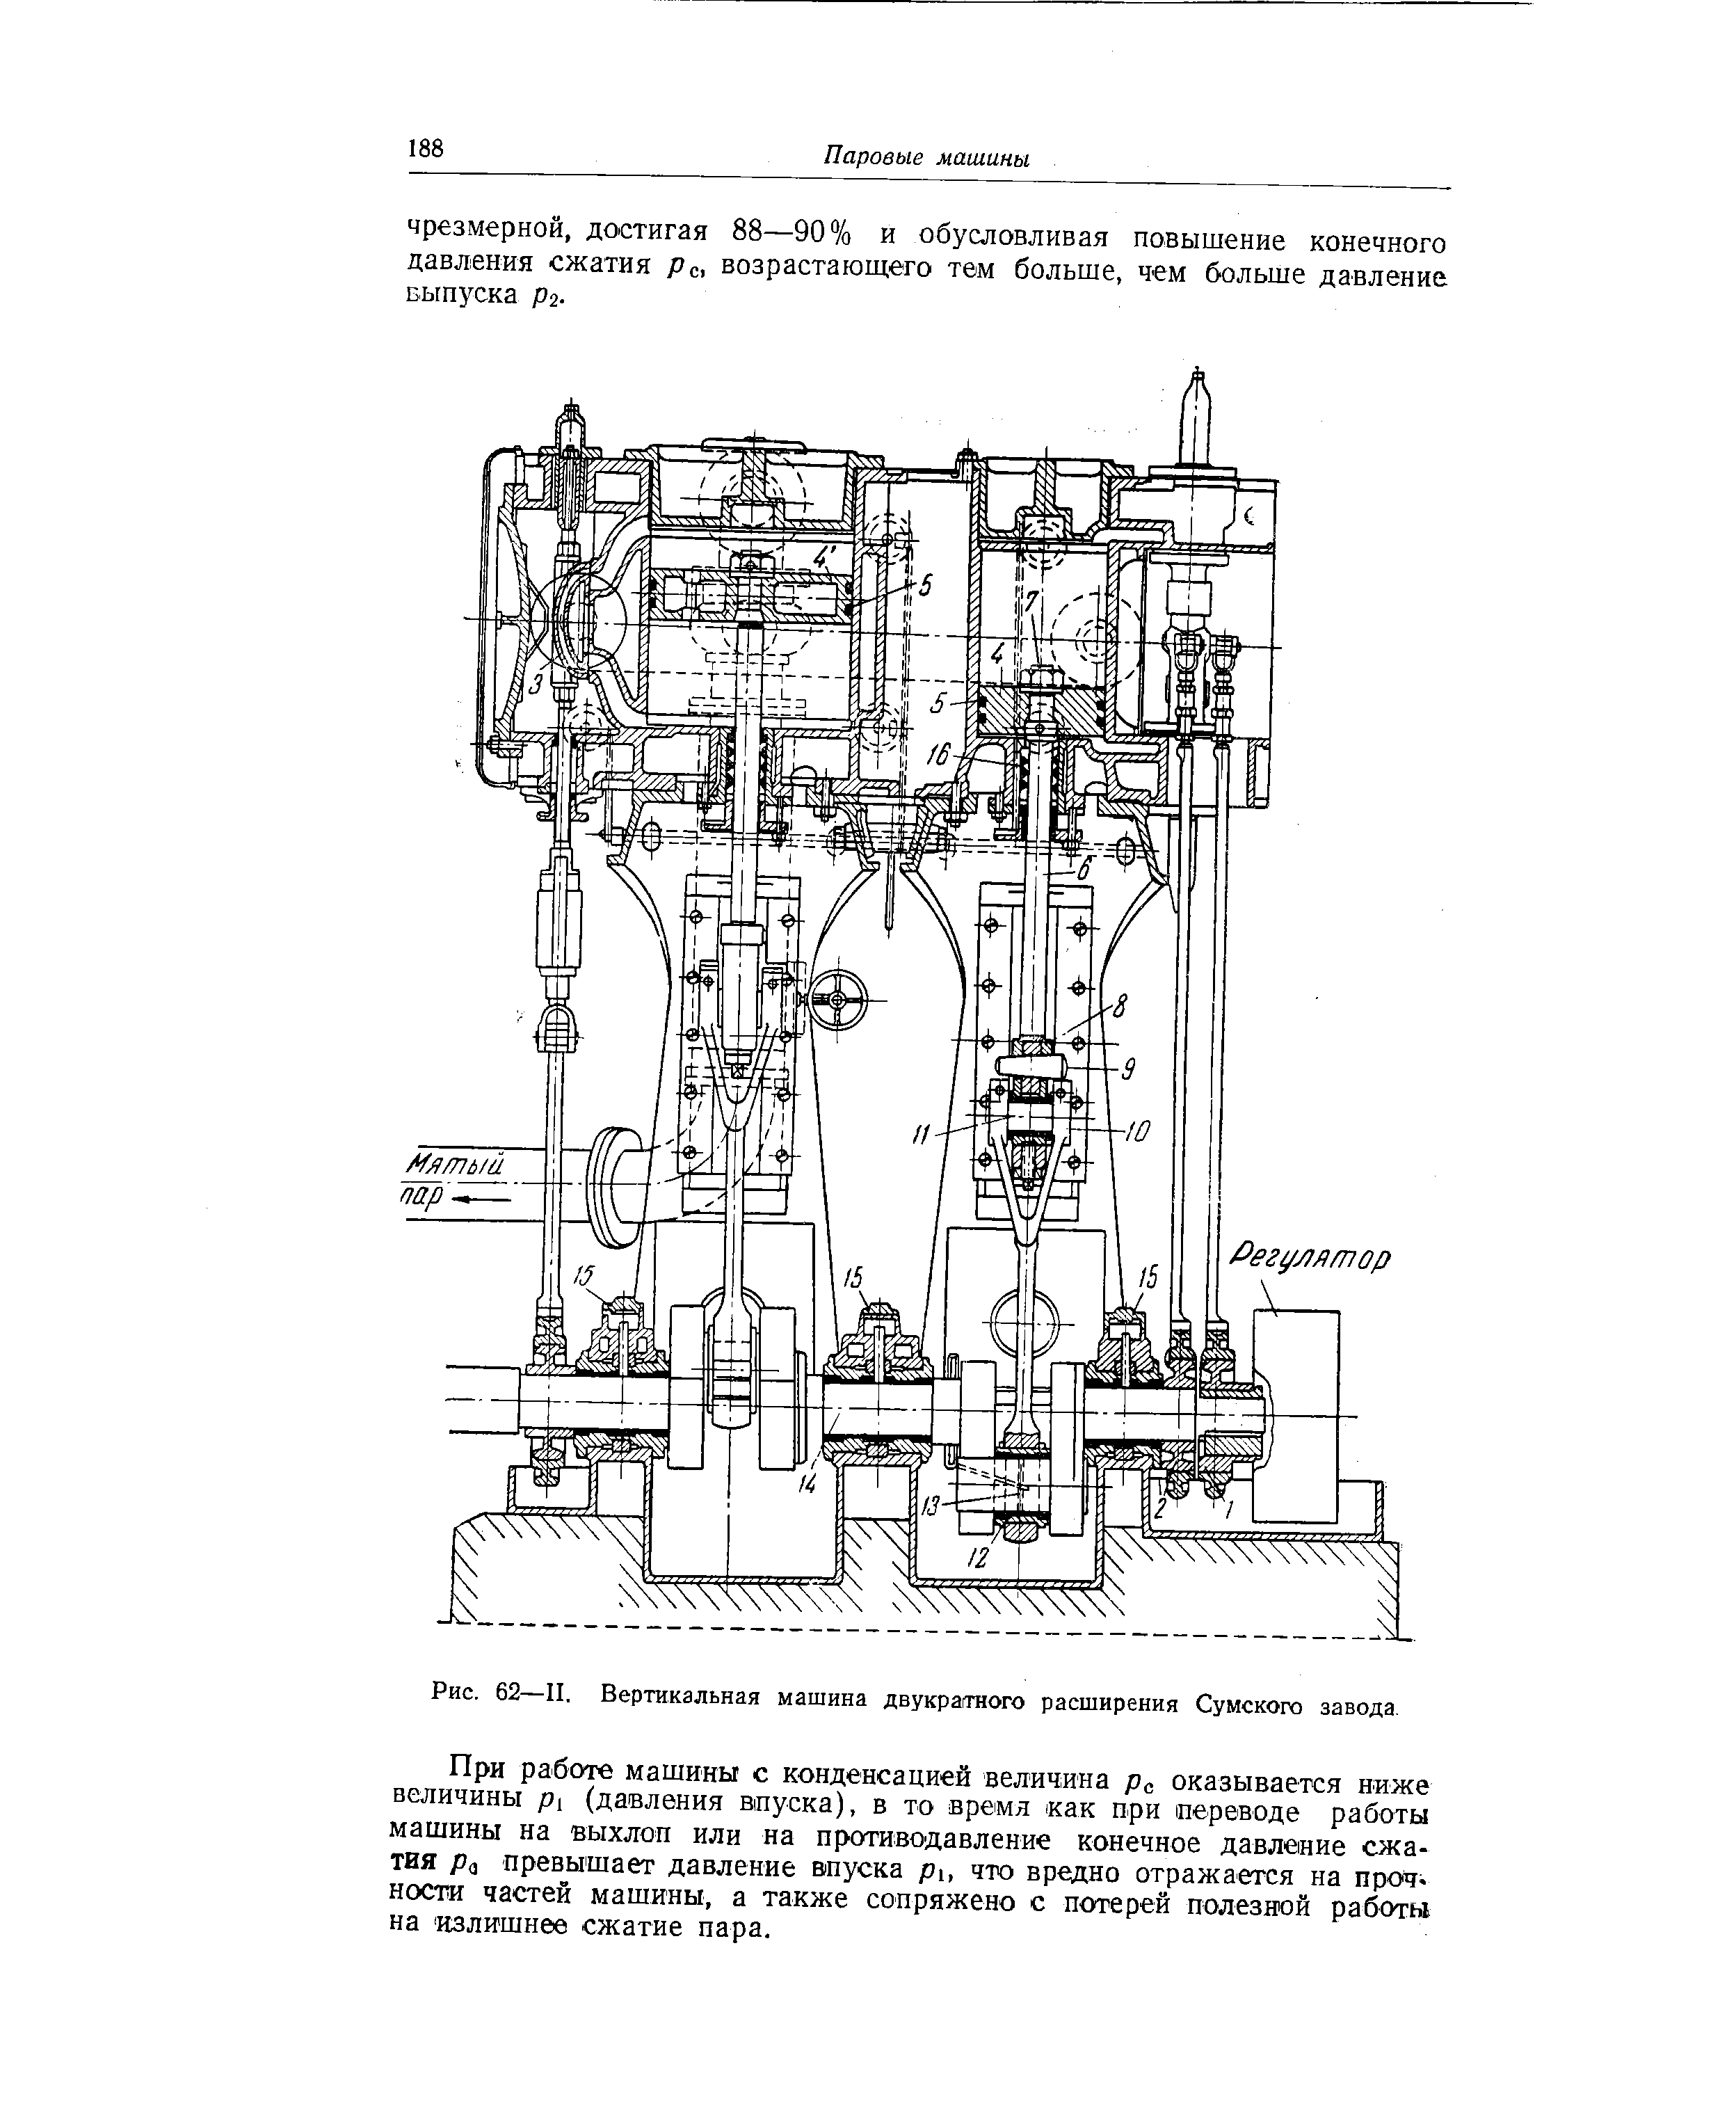 Рис. 62—II. Вертикальная машина двукраггного расширения Сумского завода
